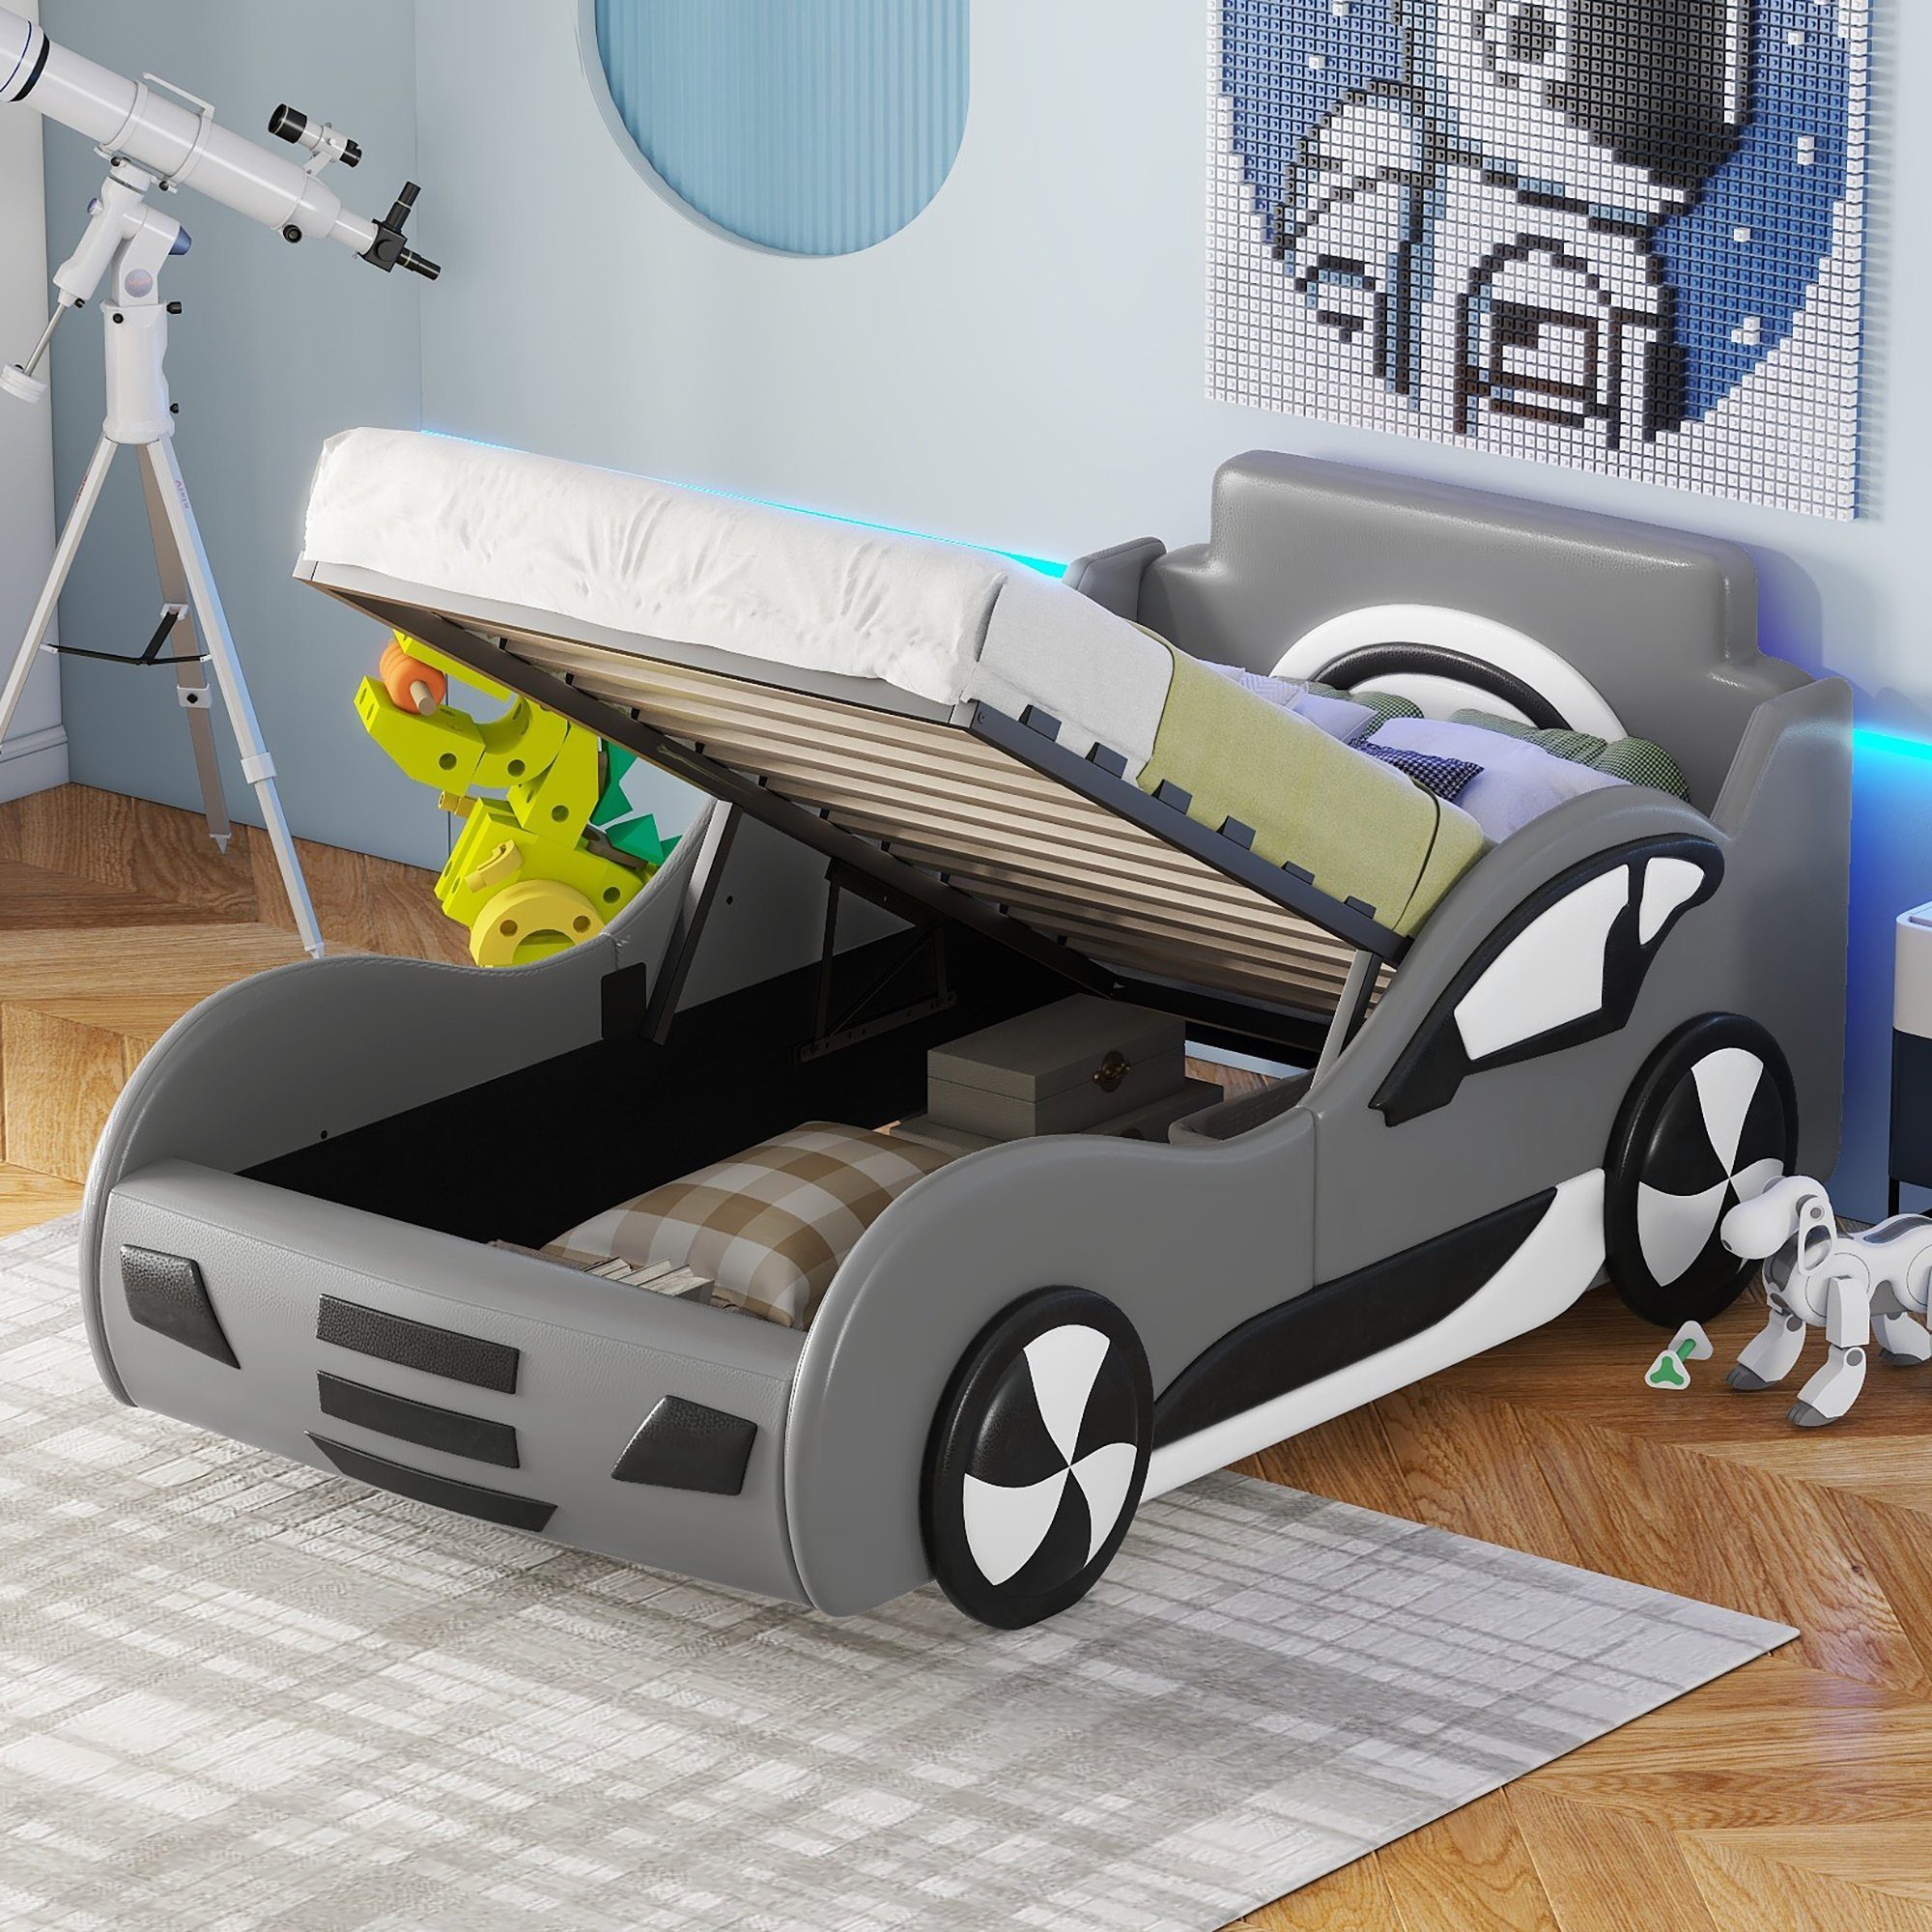 Schwarz mit Kinderbett Polsterbett mit Autobett 90x200cm Merax Rennwagen, Lattenrost, Stauraum, und gepolstert Kunstlederbezug